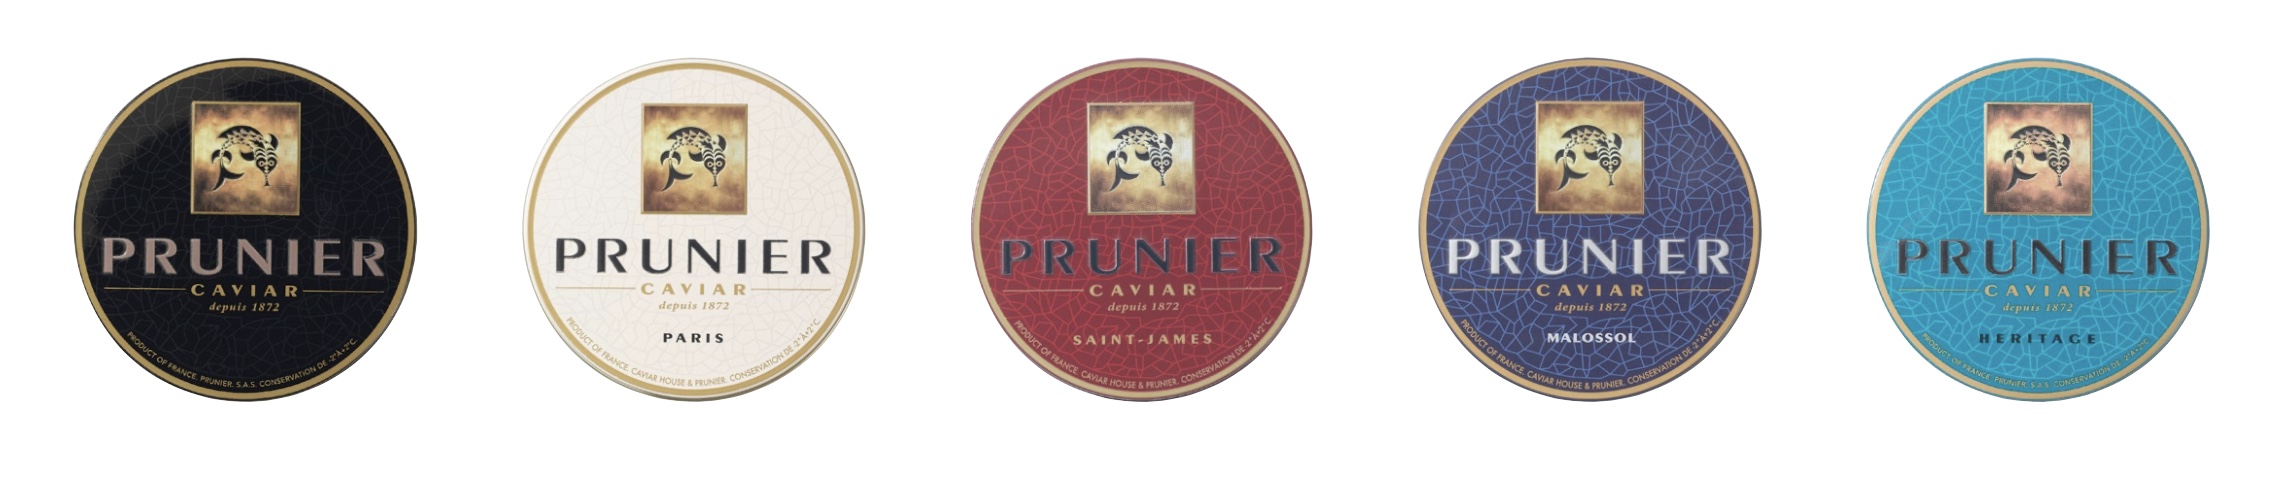 Les 5 grands caviars de la Maison Prunier